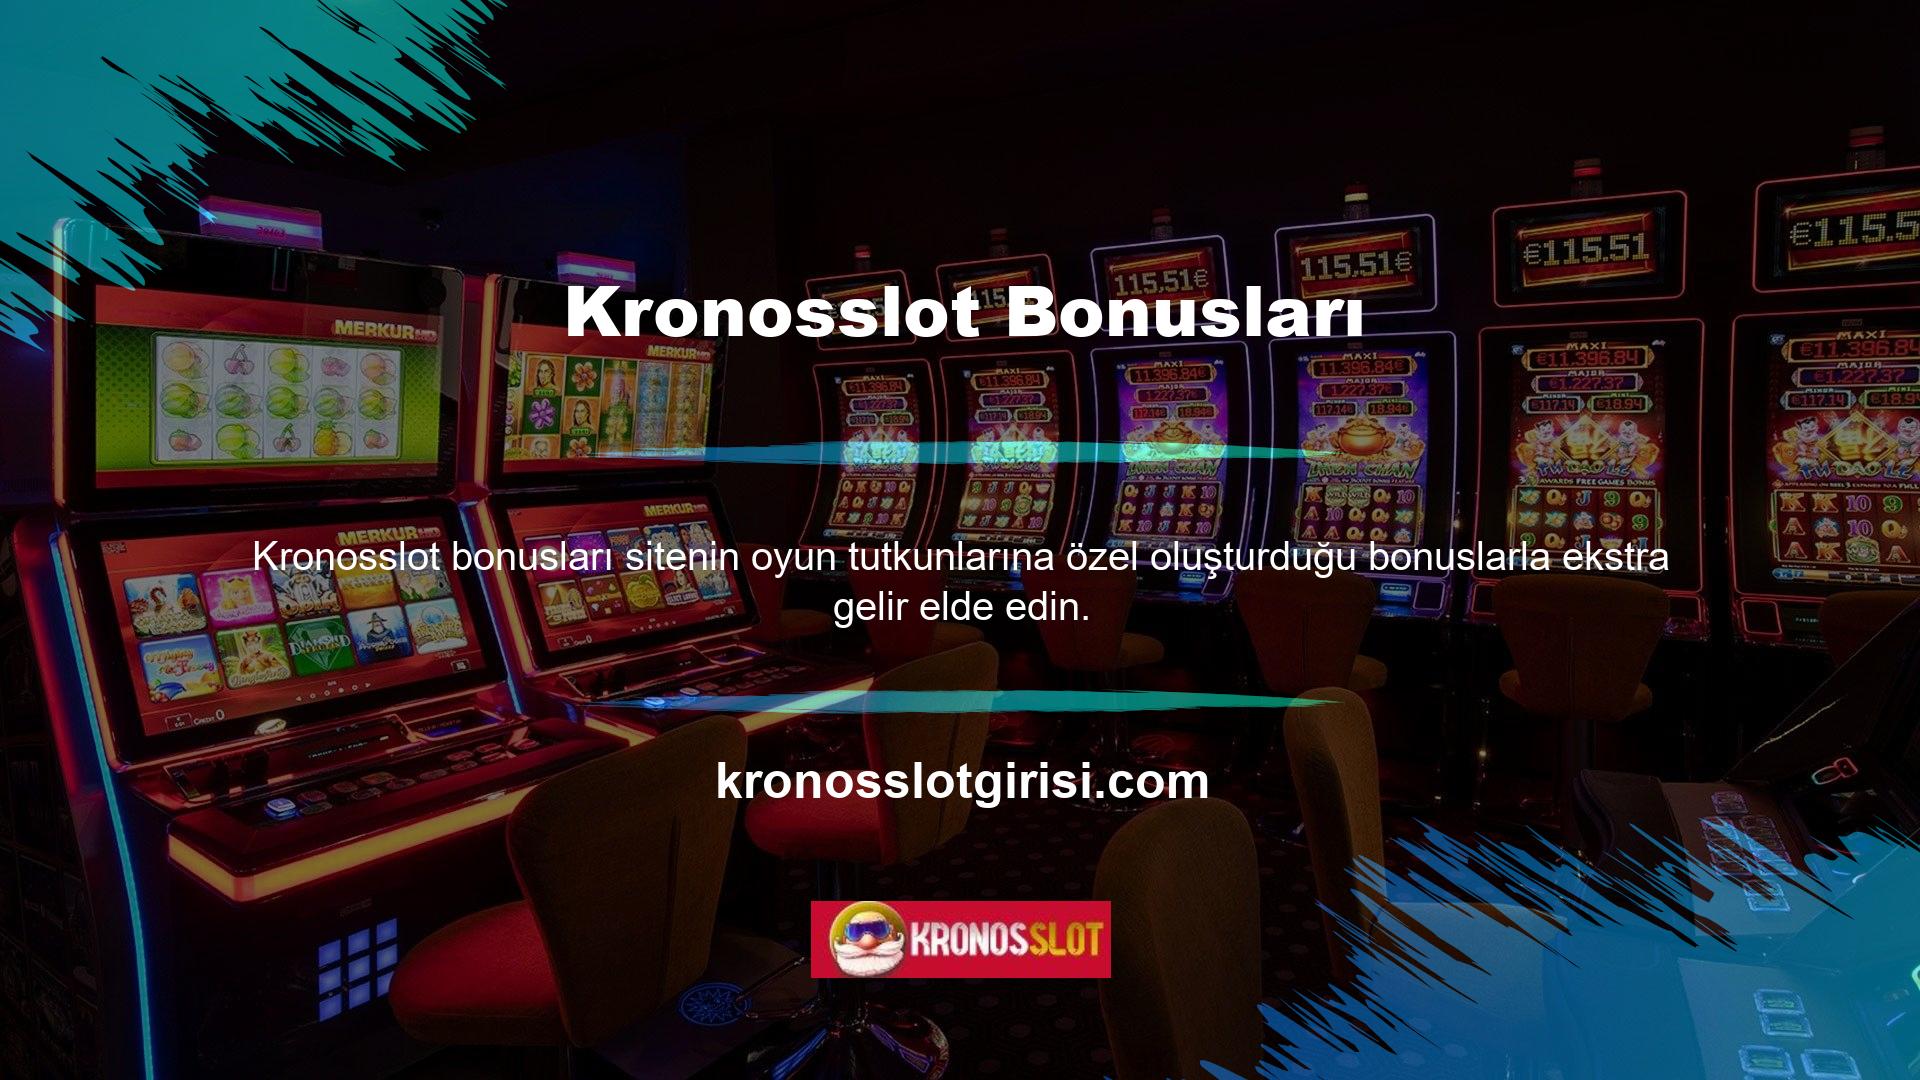 En iyi bonus seçeneklerinden yararlanmak istiyorsanız Kronosslot bonus talebinde bulunabilir ve sunulan olanaklar hakkında daha fazla bilgi edinebilirsiniz